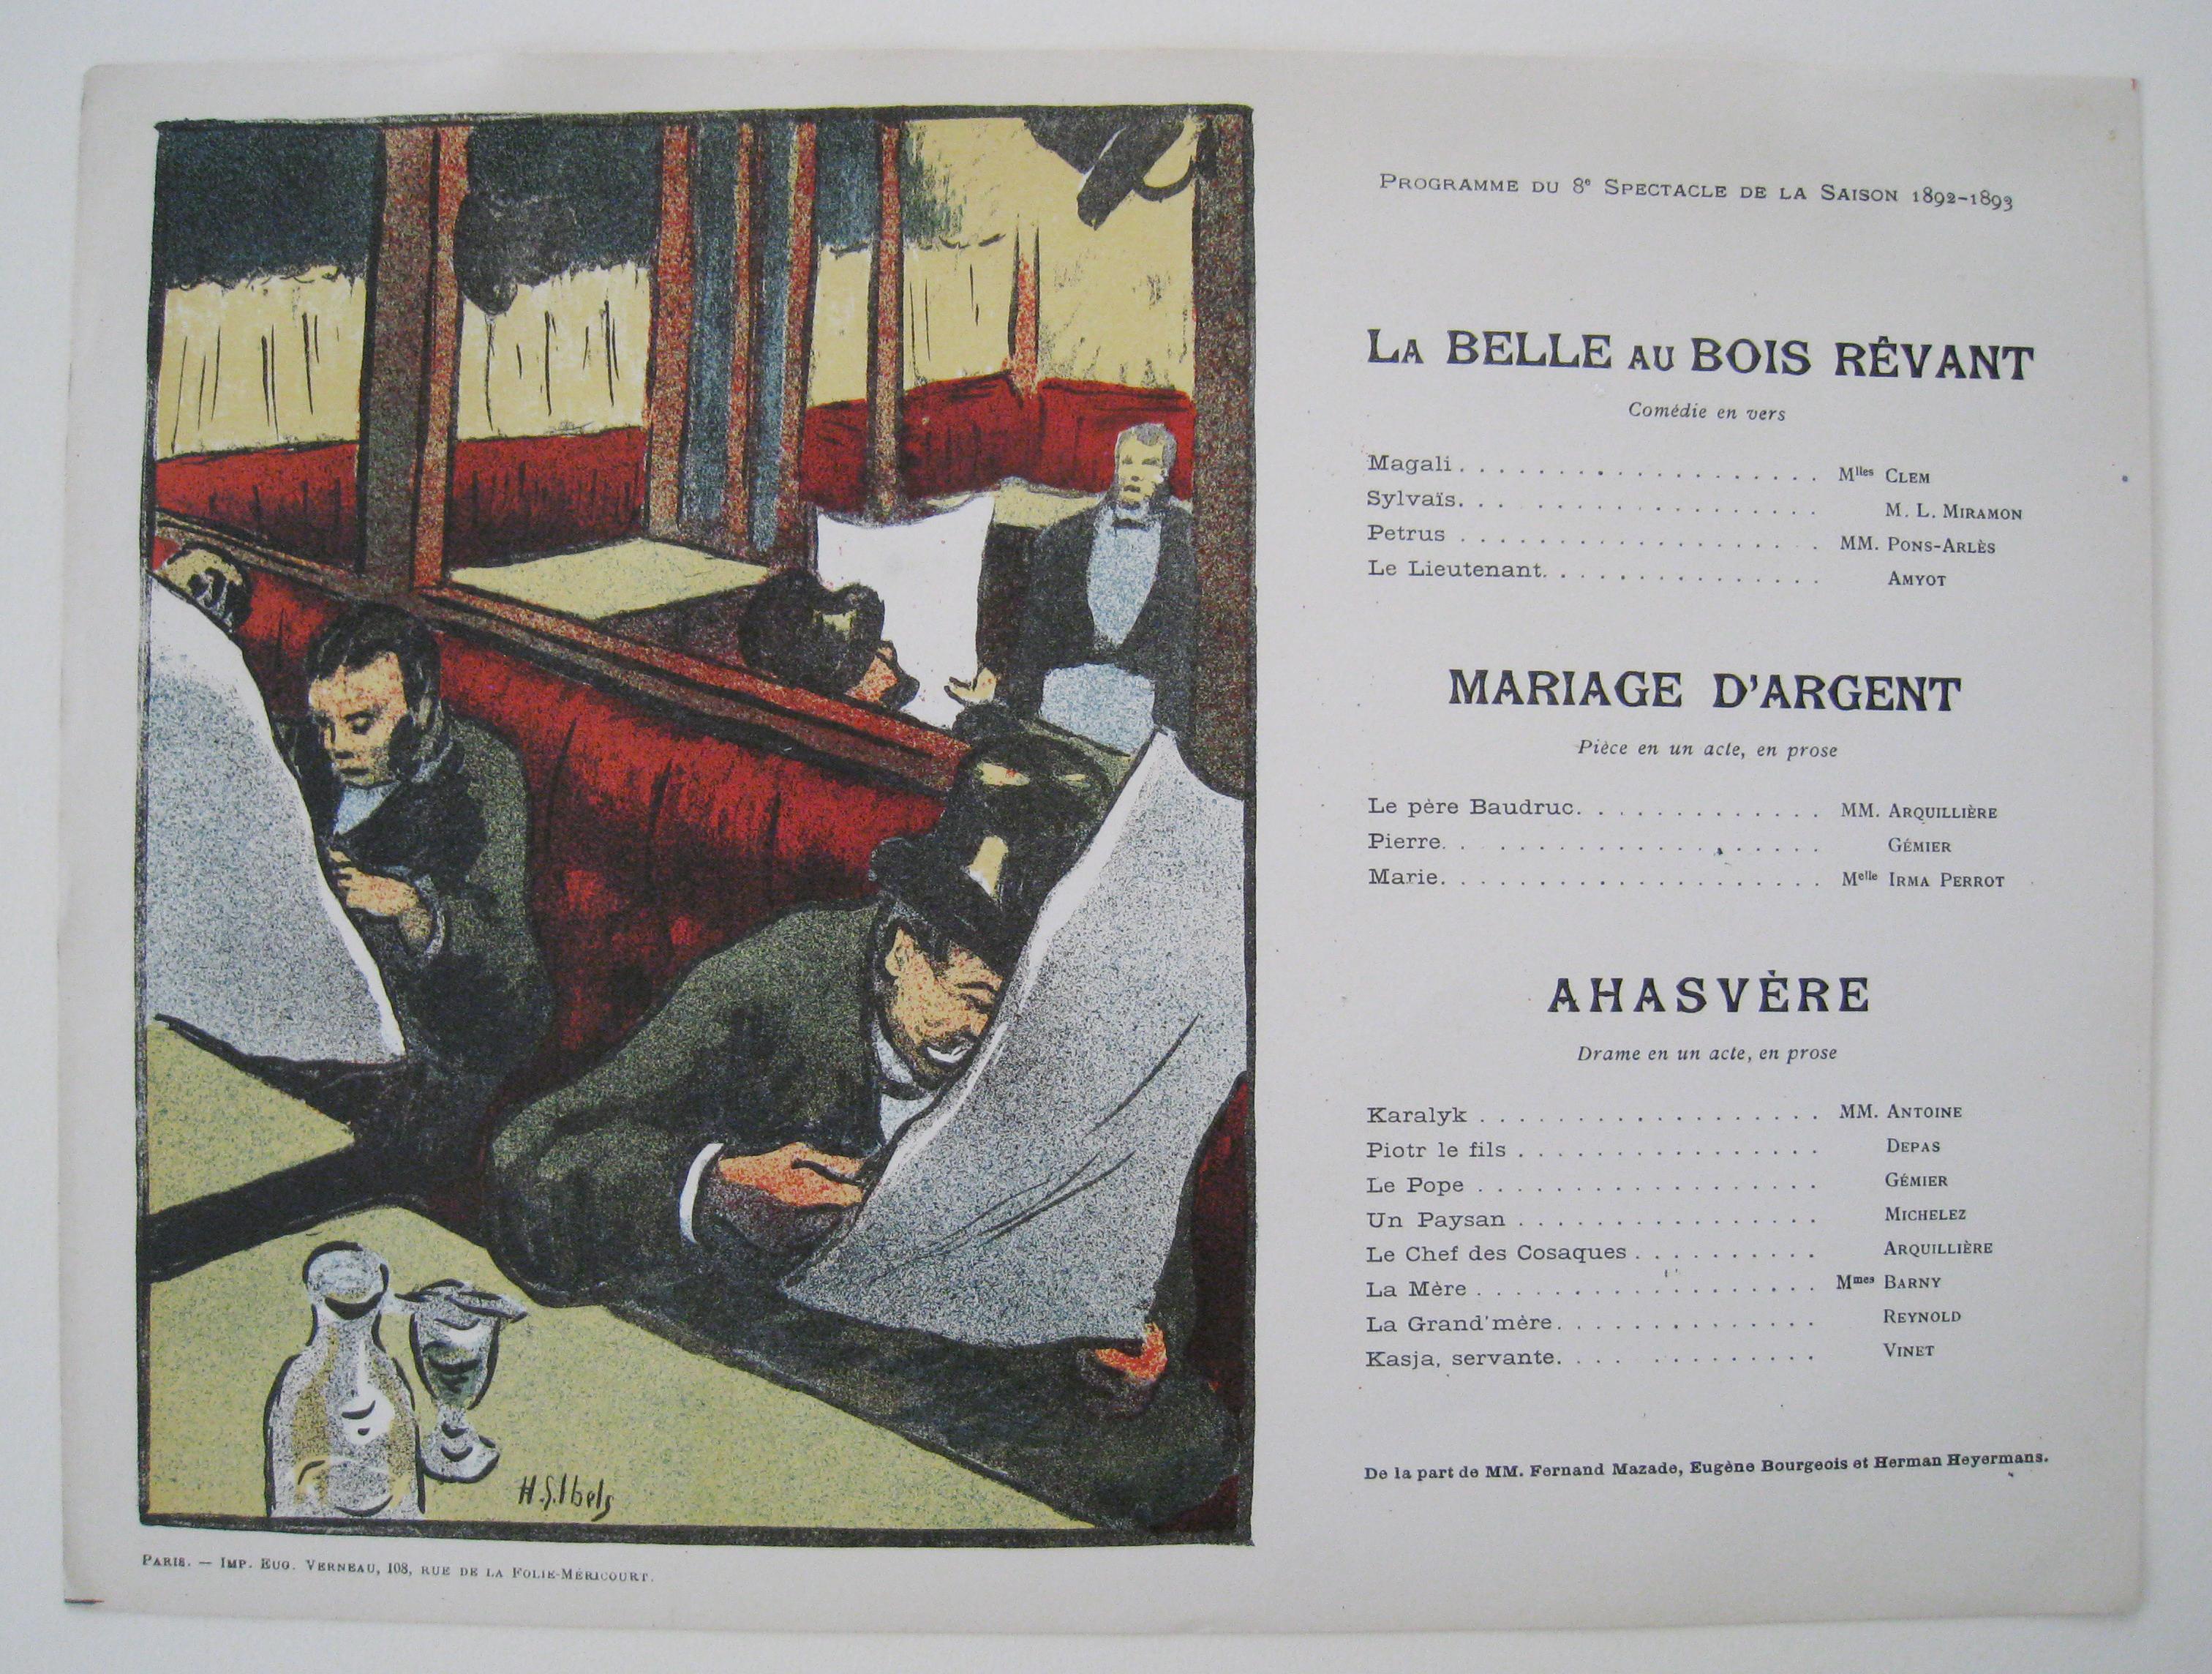  Program for Le Belle Au Bois Revant, Mariage D'Argent, Ahasvere. 12 June 1893. 